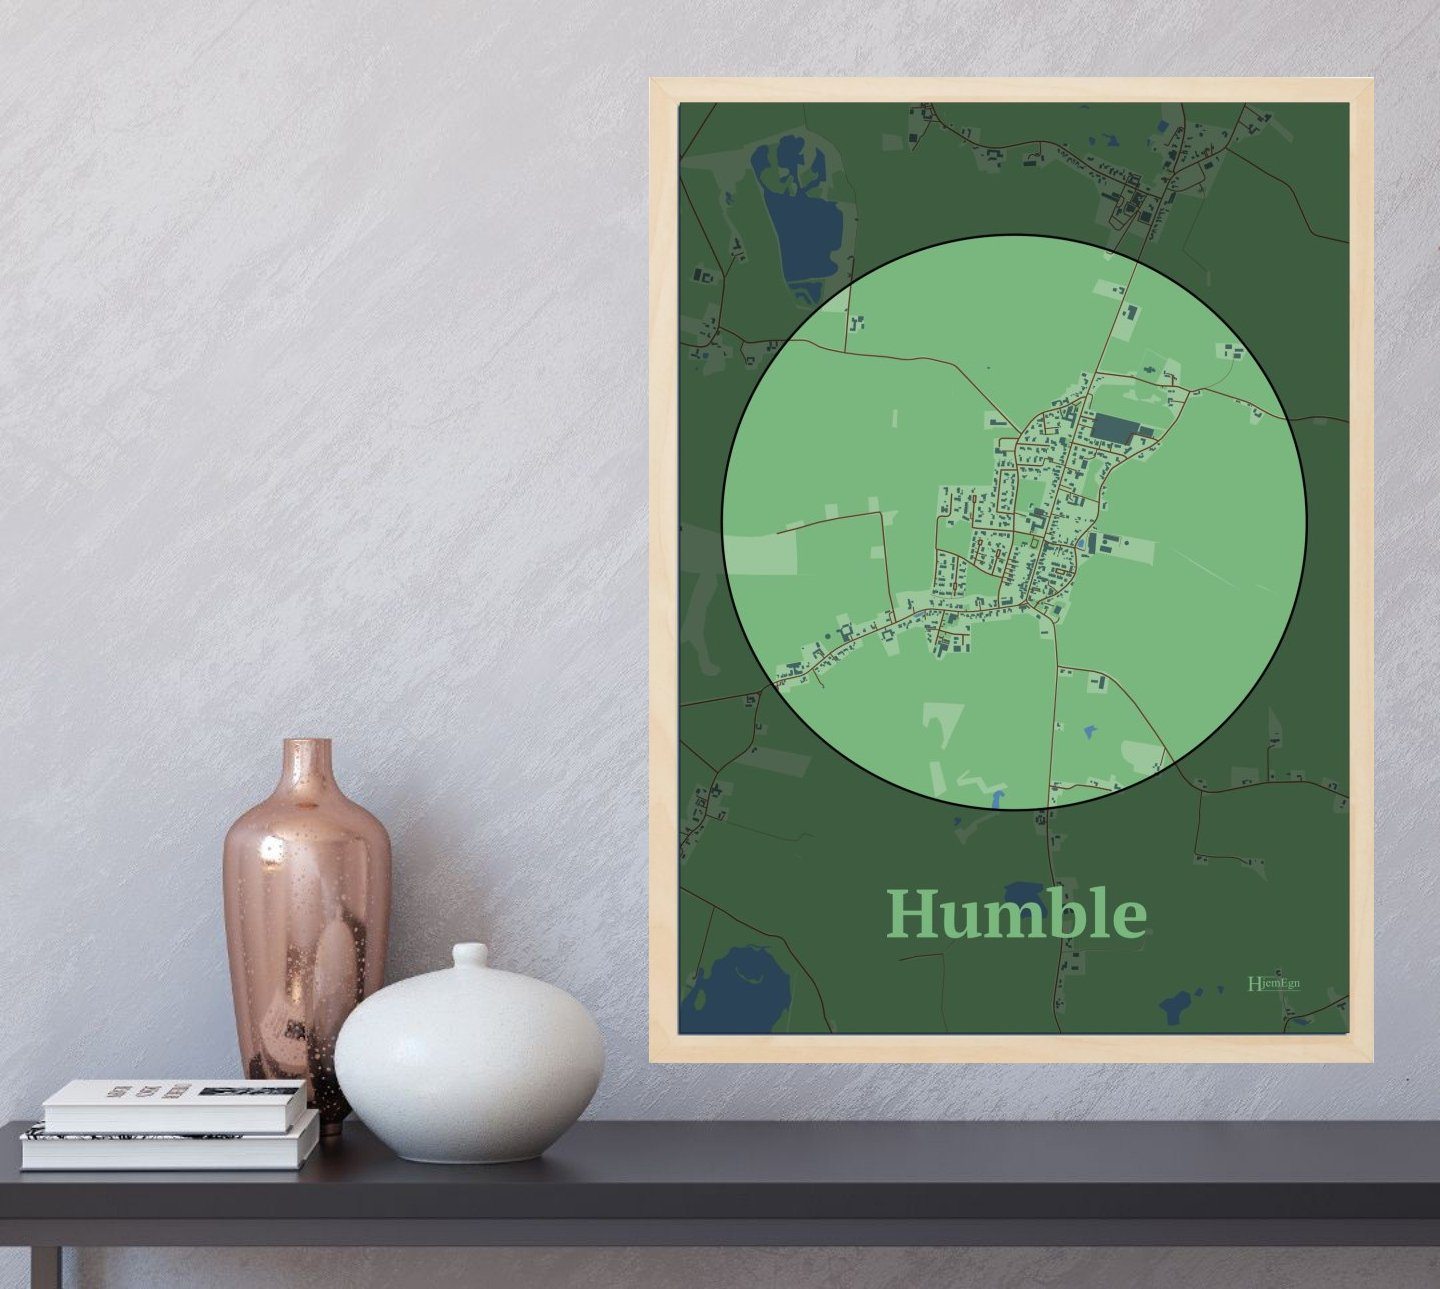 Humble plakat i farve  og HjemEgn.dk design centrum. Design bykort for Humble